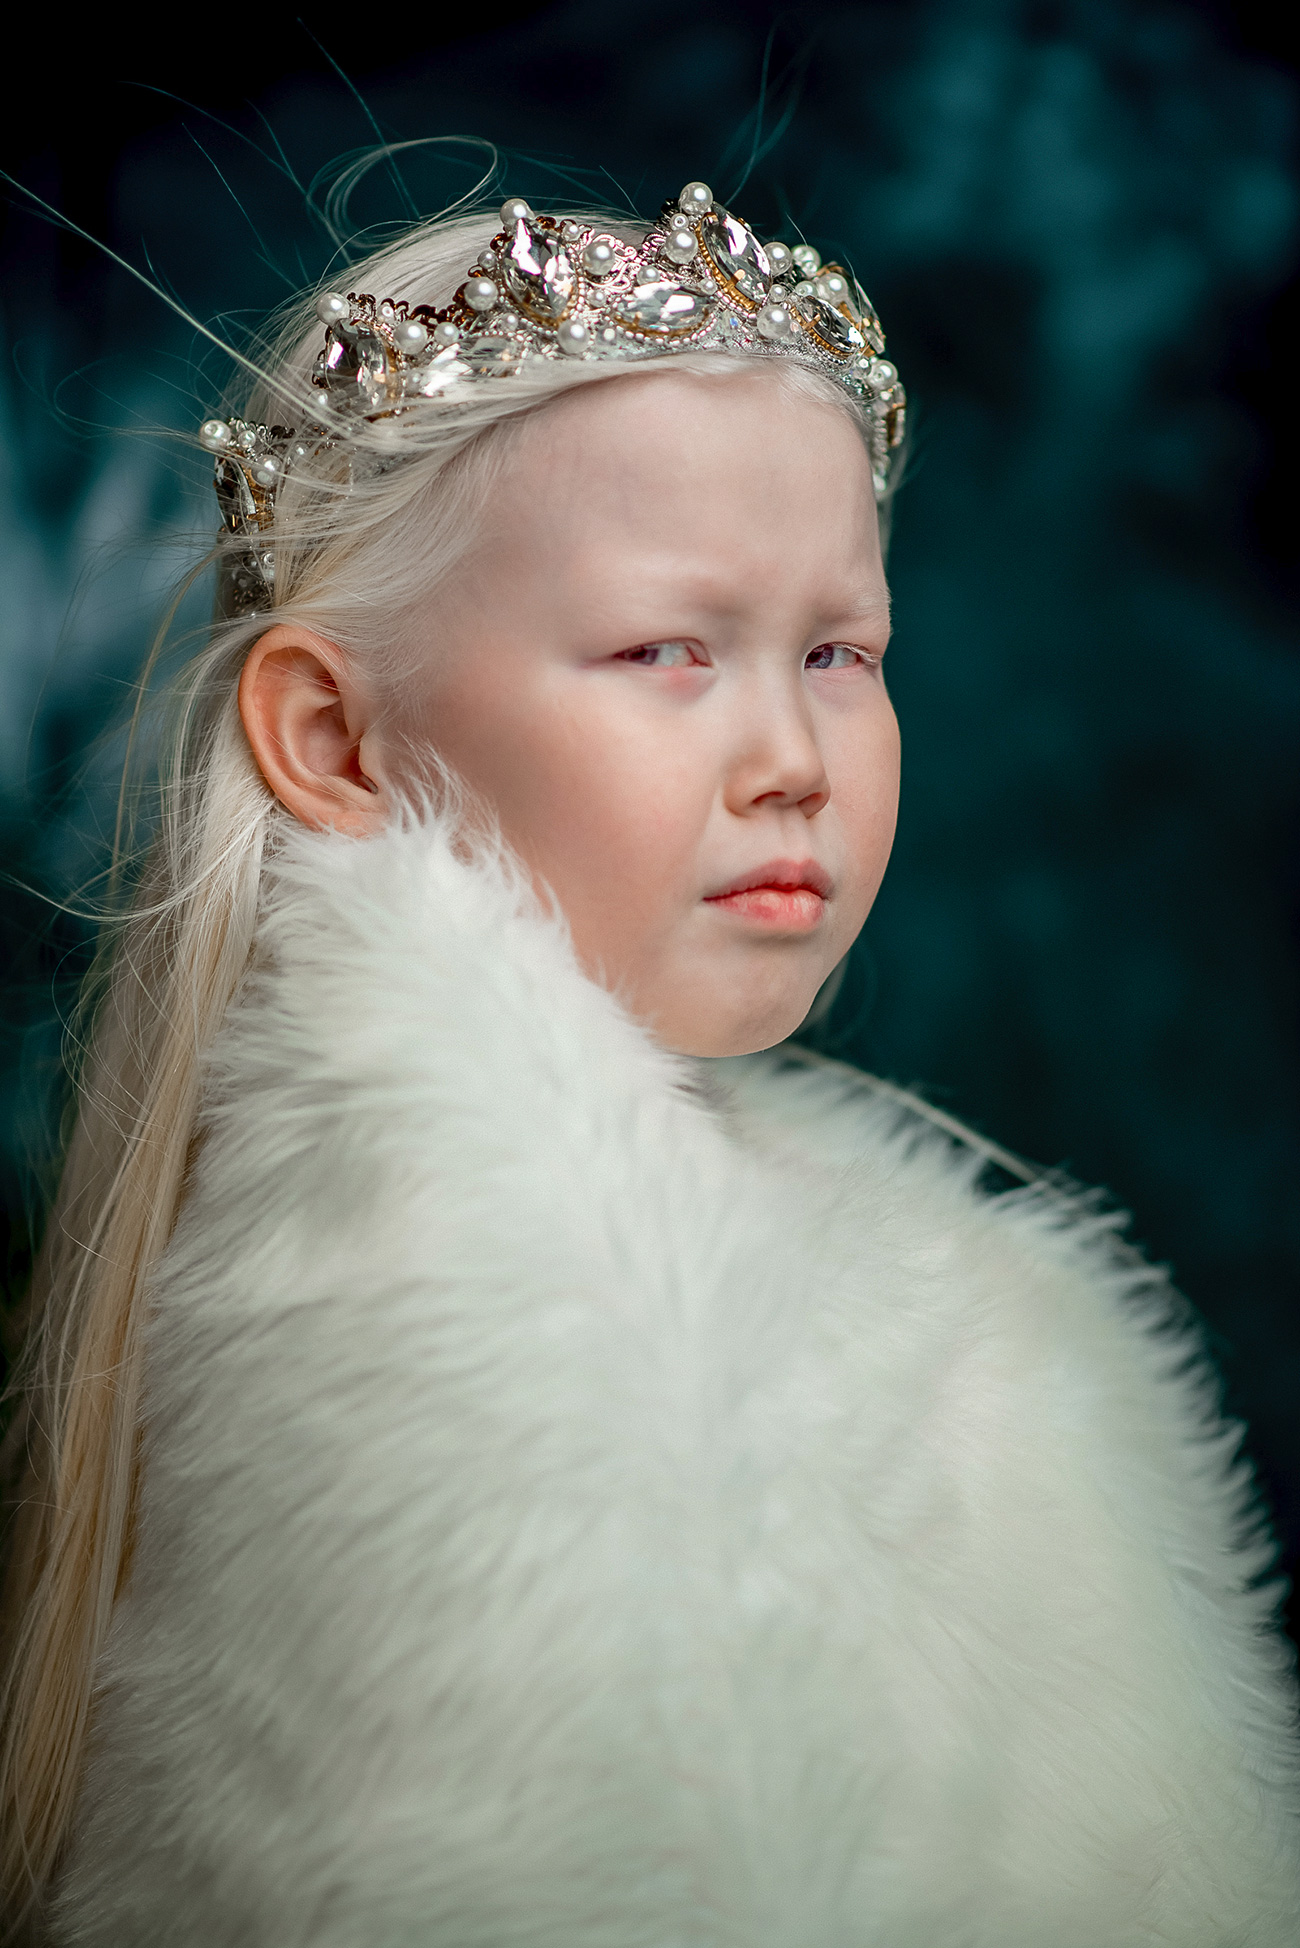 Naryana est une petite fille albinos. Elle a des cheveux blancs comme neige et des yeux caméléons bleu-violet. Son physique est tout à fait atypique pour les habitants de sa région natale, la Iakoutie, où la plupart des gens sont bruns aux yeux marron.